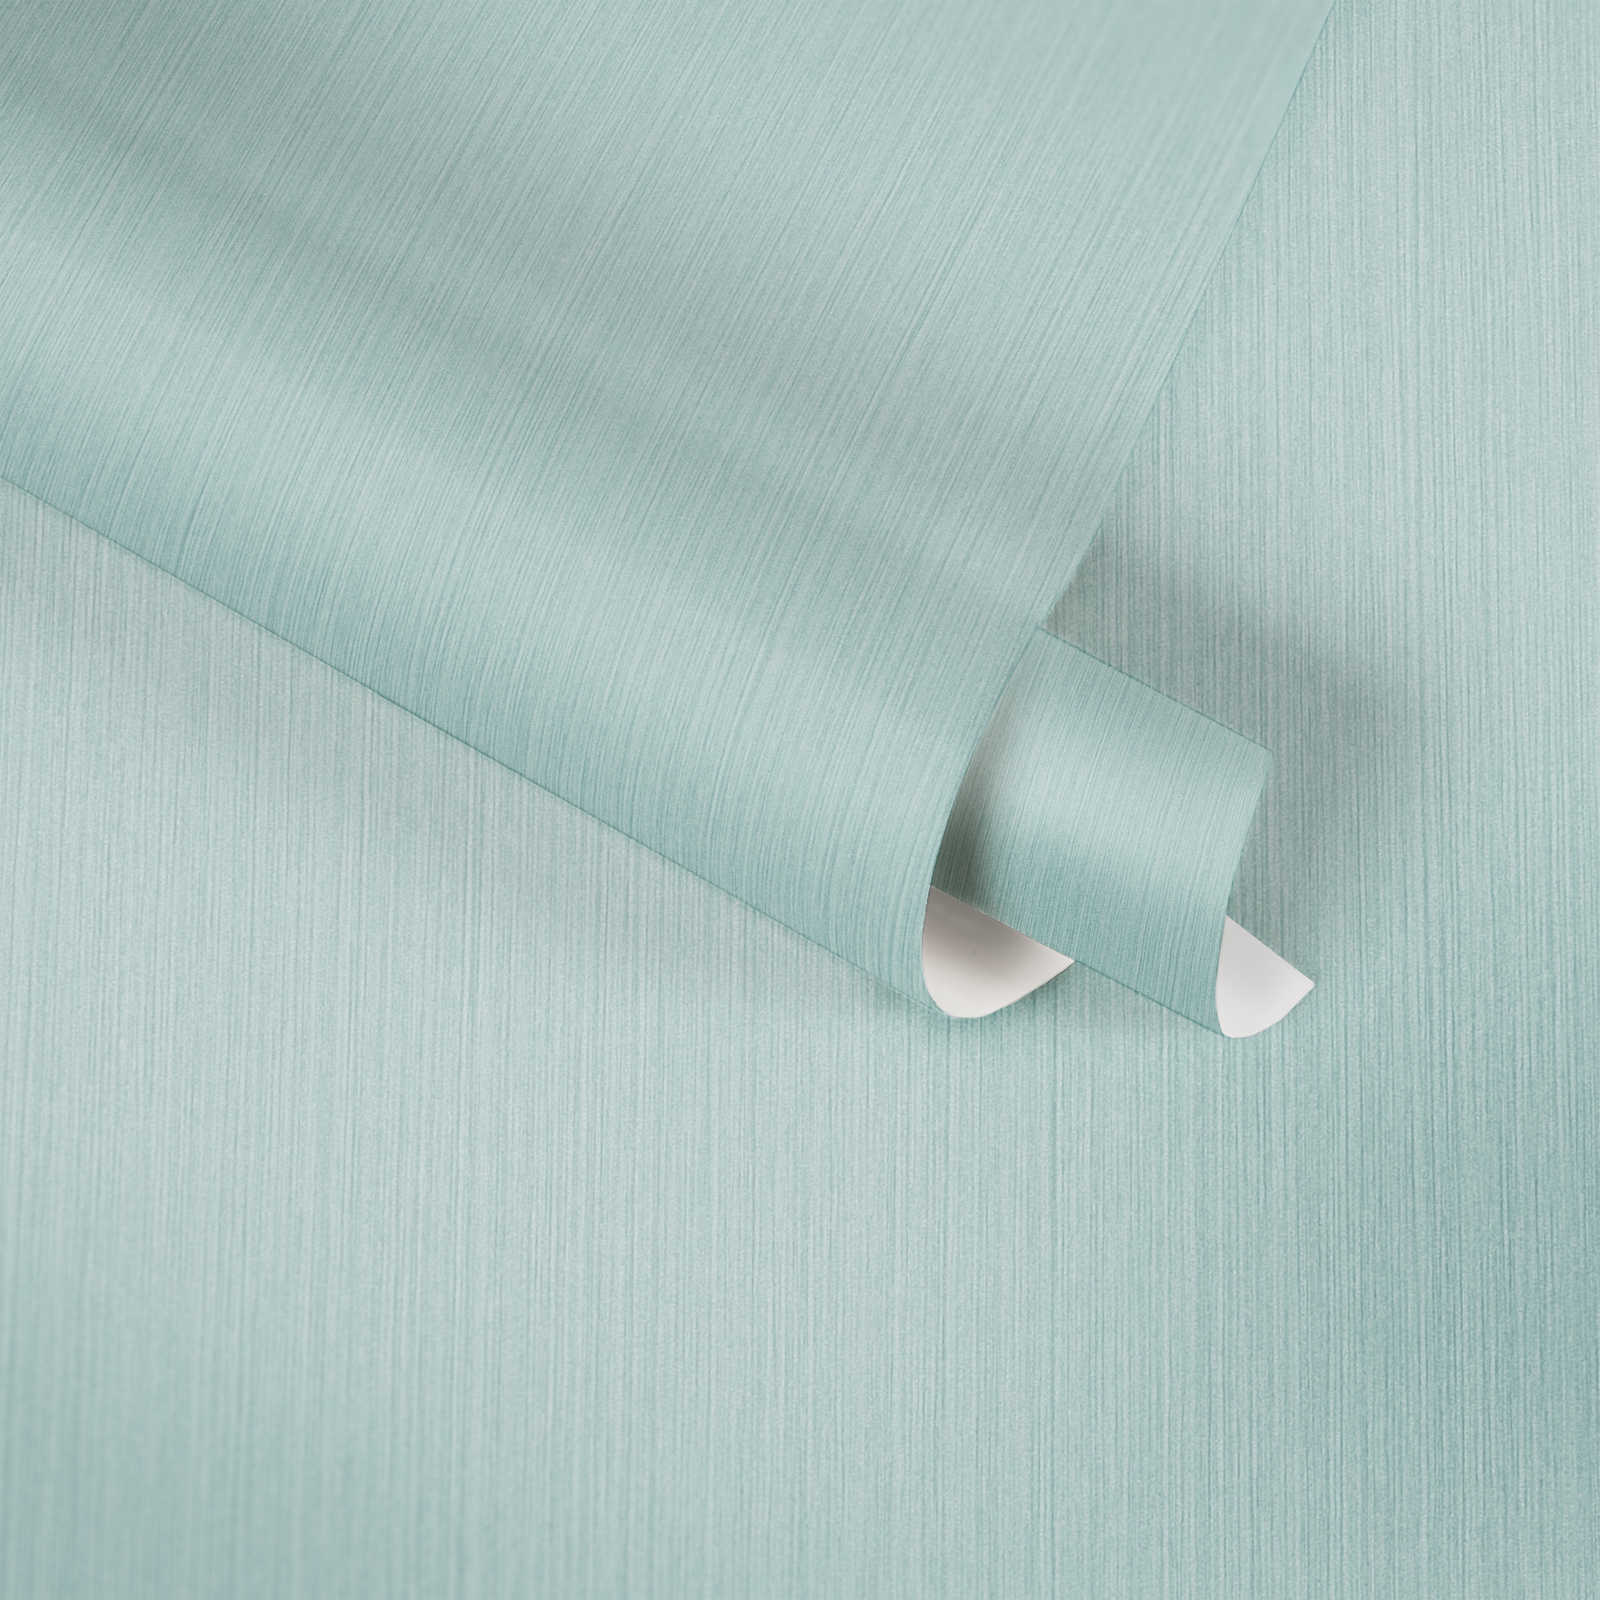             Papier peint uni bleu clair avec effet textile chiné de MICHALSKY
        